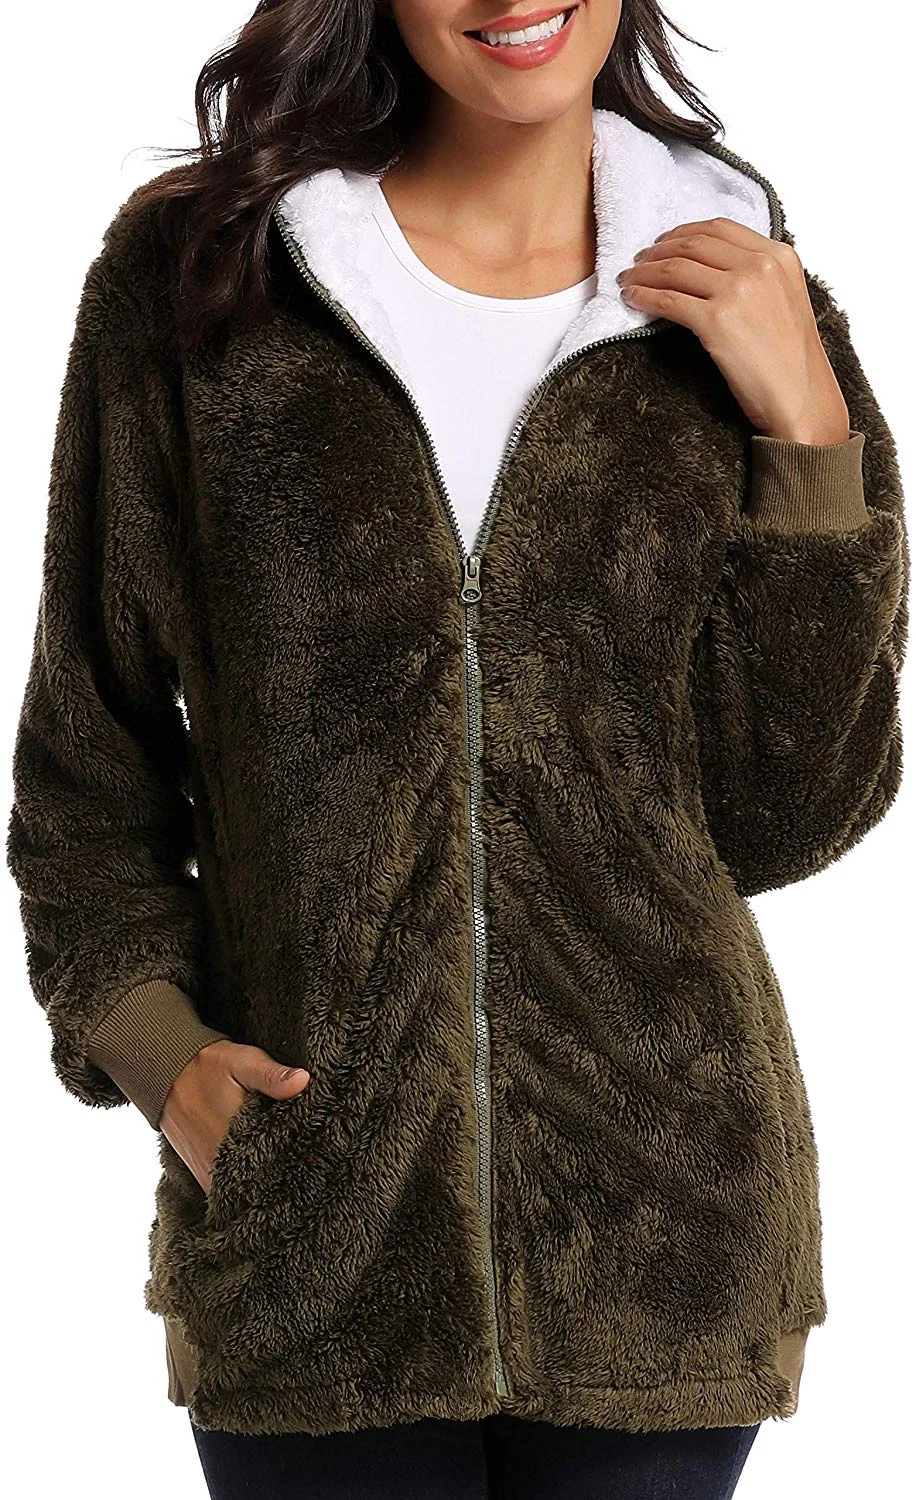 Women's Winter Oversized Open Front Fleece Hooded Draped Pockets Cardigan Coat Zip Up Faux Shearling Oversized Coat Jacket